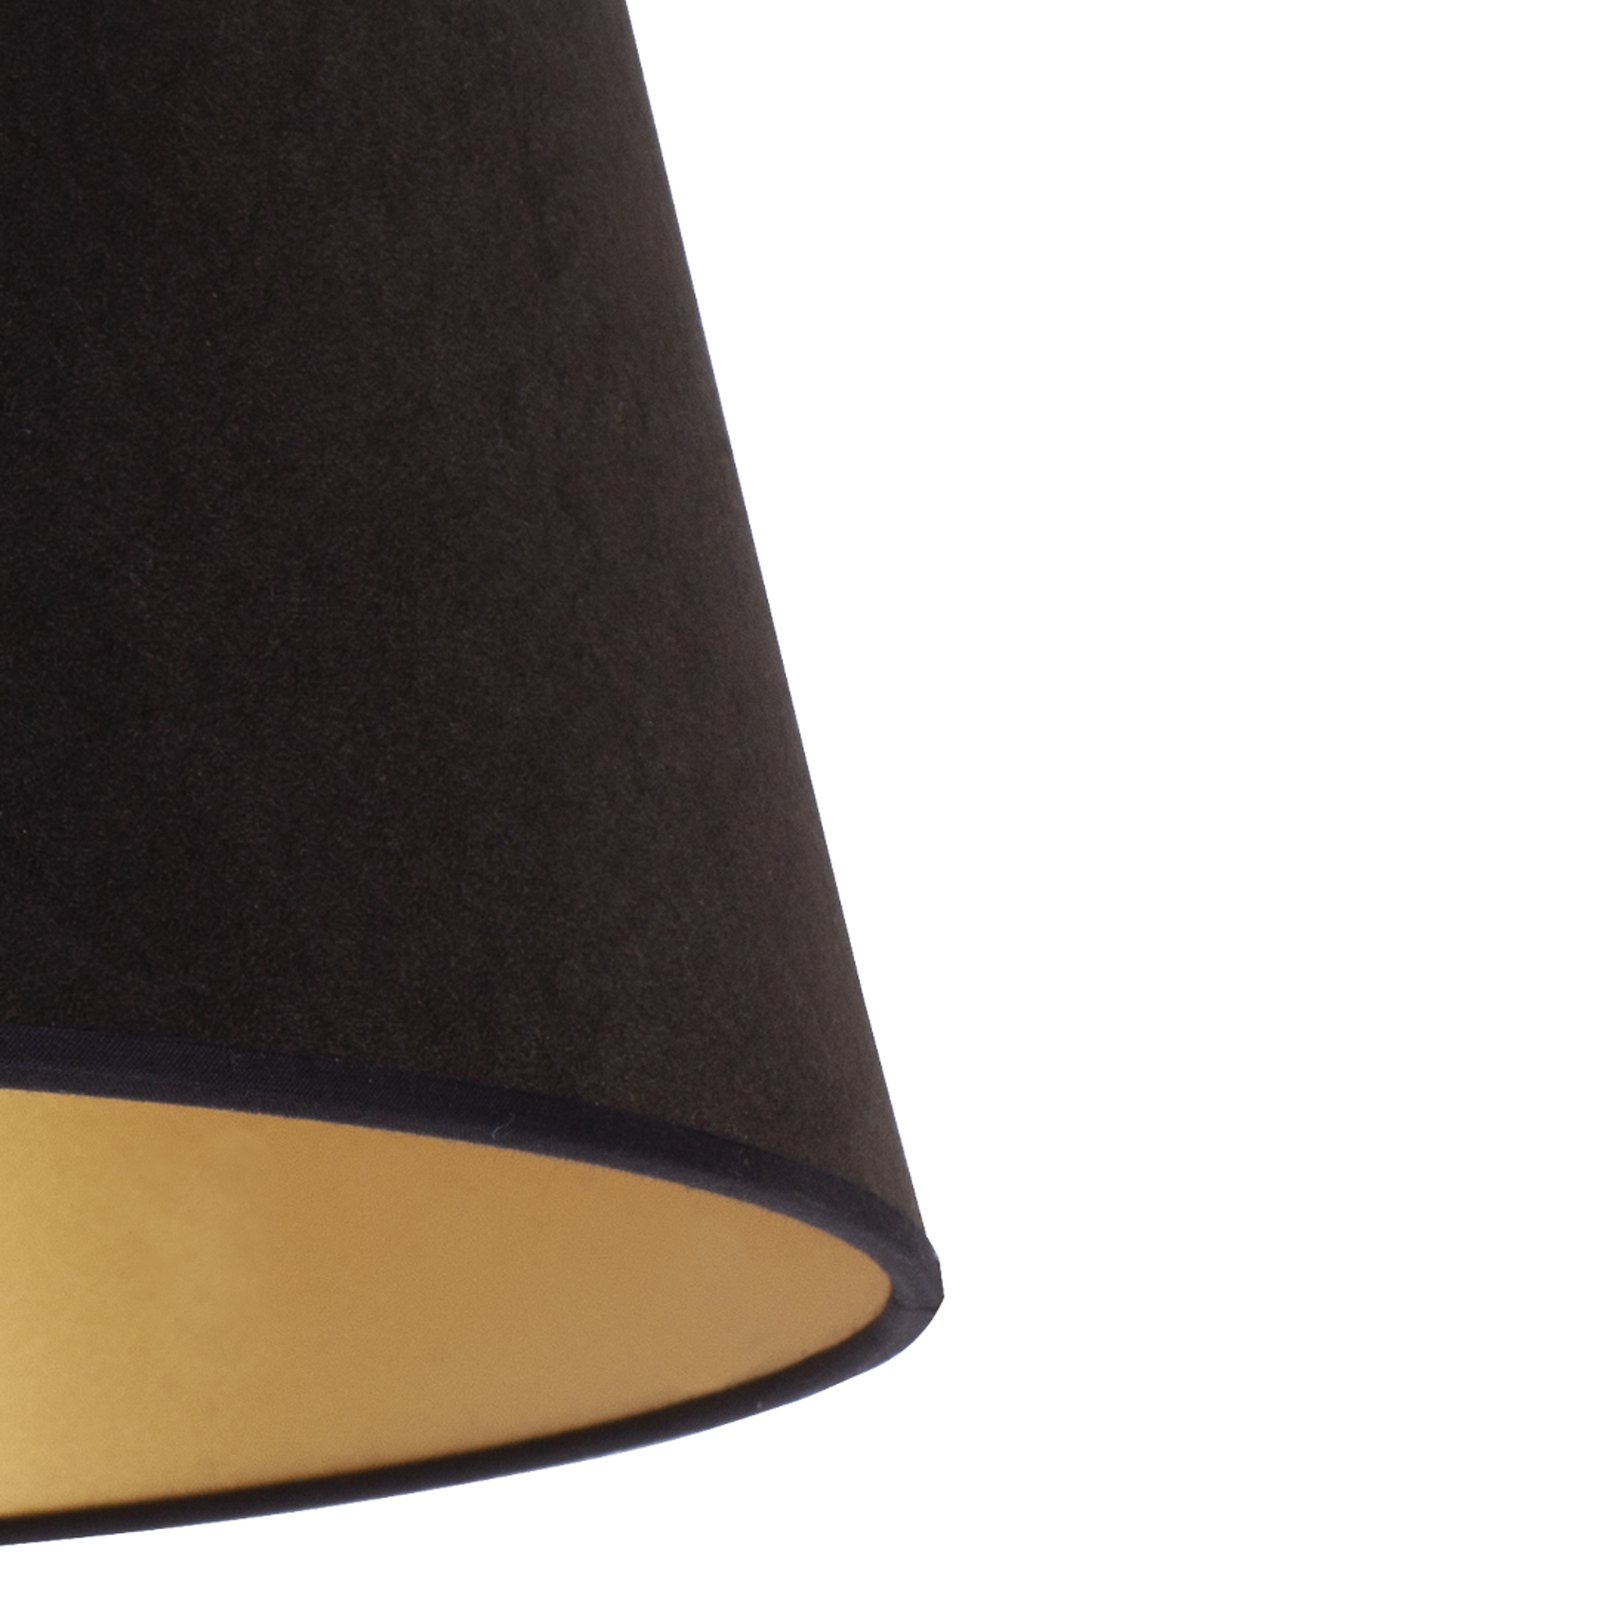 Lampeskjerm Cone høyde 18 cm, svart/gull